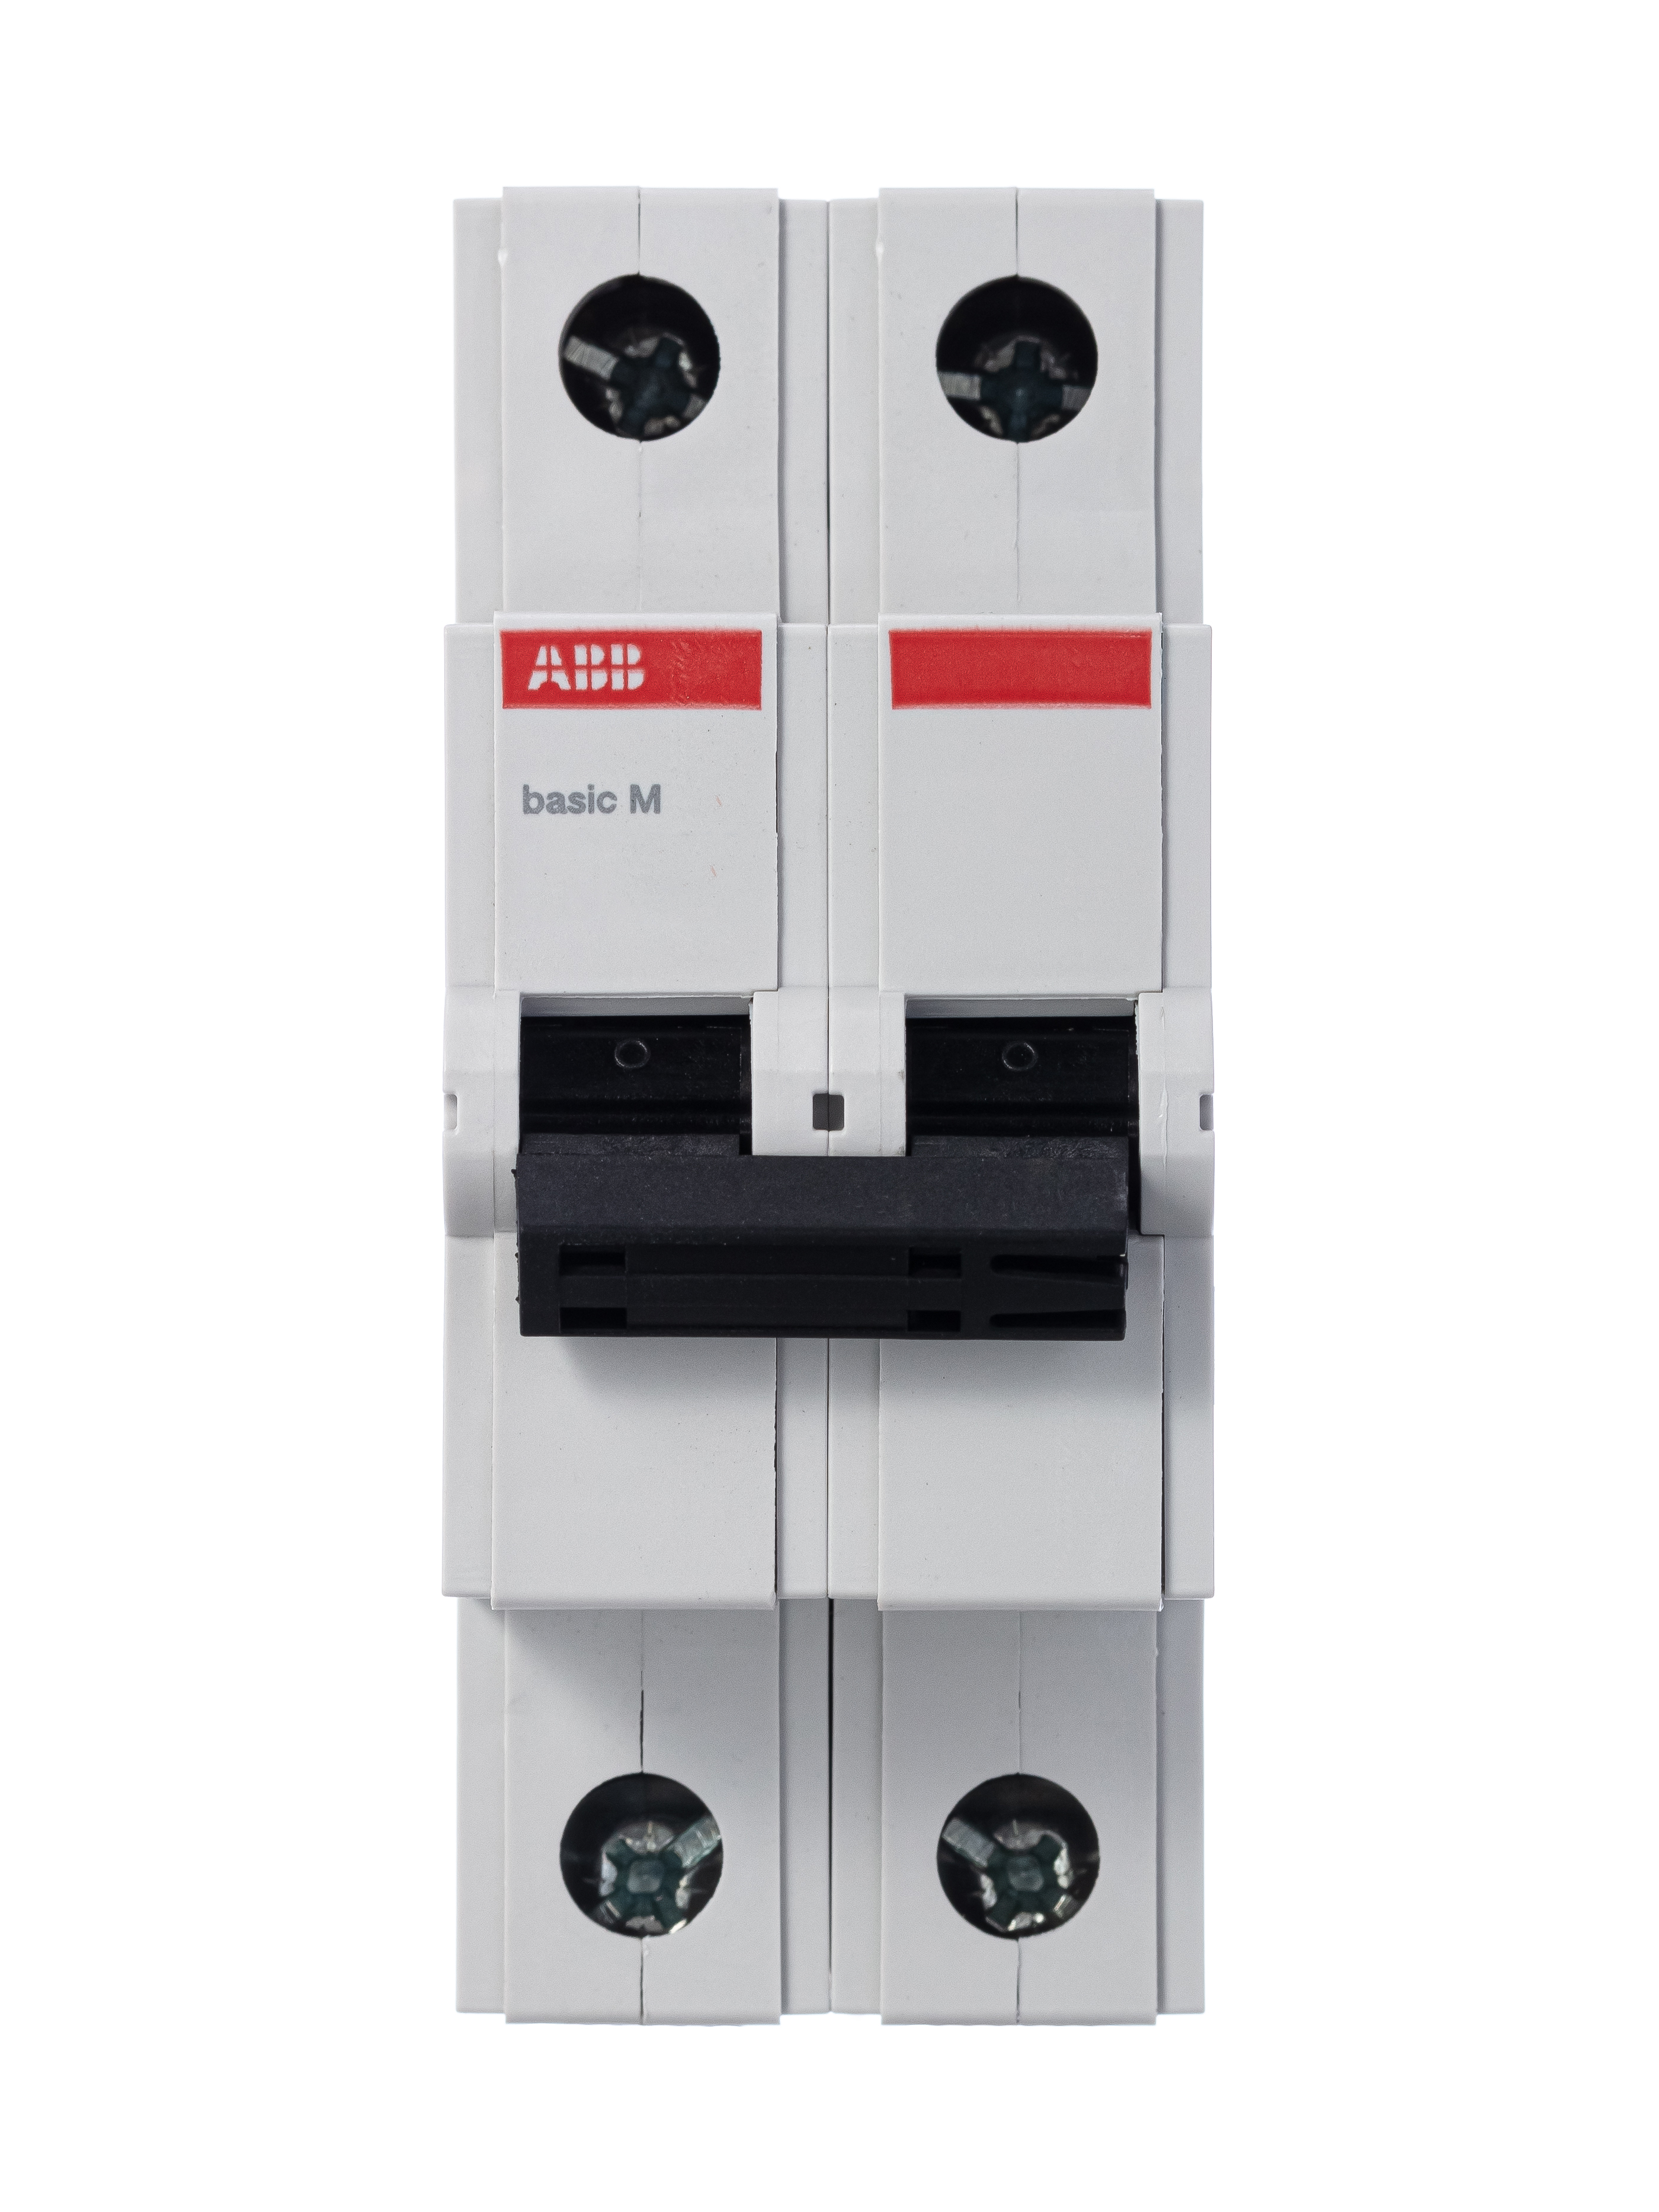 Автоматический выключатель 16а 2p. ABB дифференциальный автоматический выключатель dsh201r c16 ac30. Автомат ABB bms412c06. Автоматический выключатель ABB 2p 40а. Автоматический выключатель ABB bms412c25.